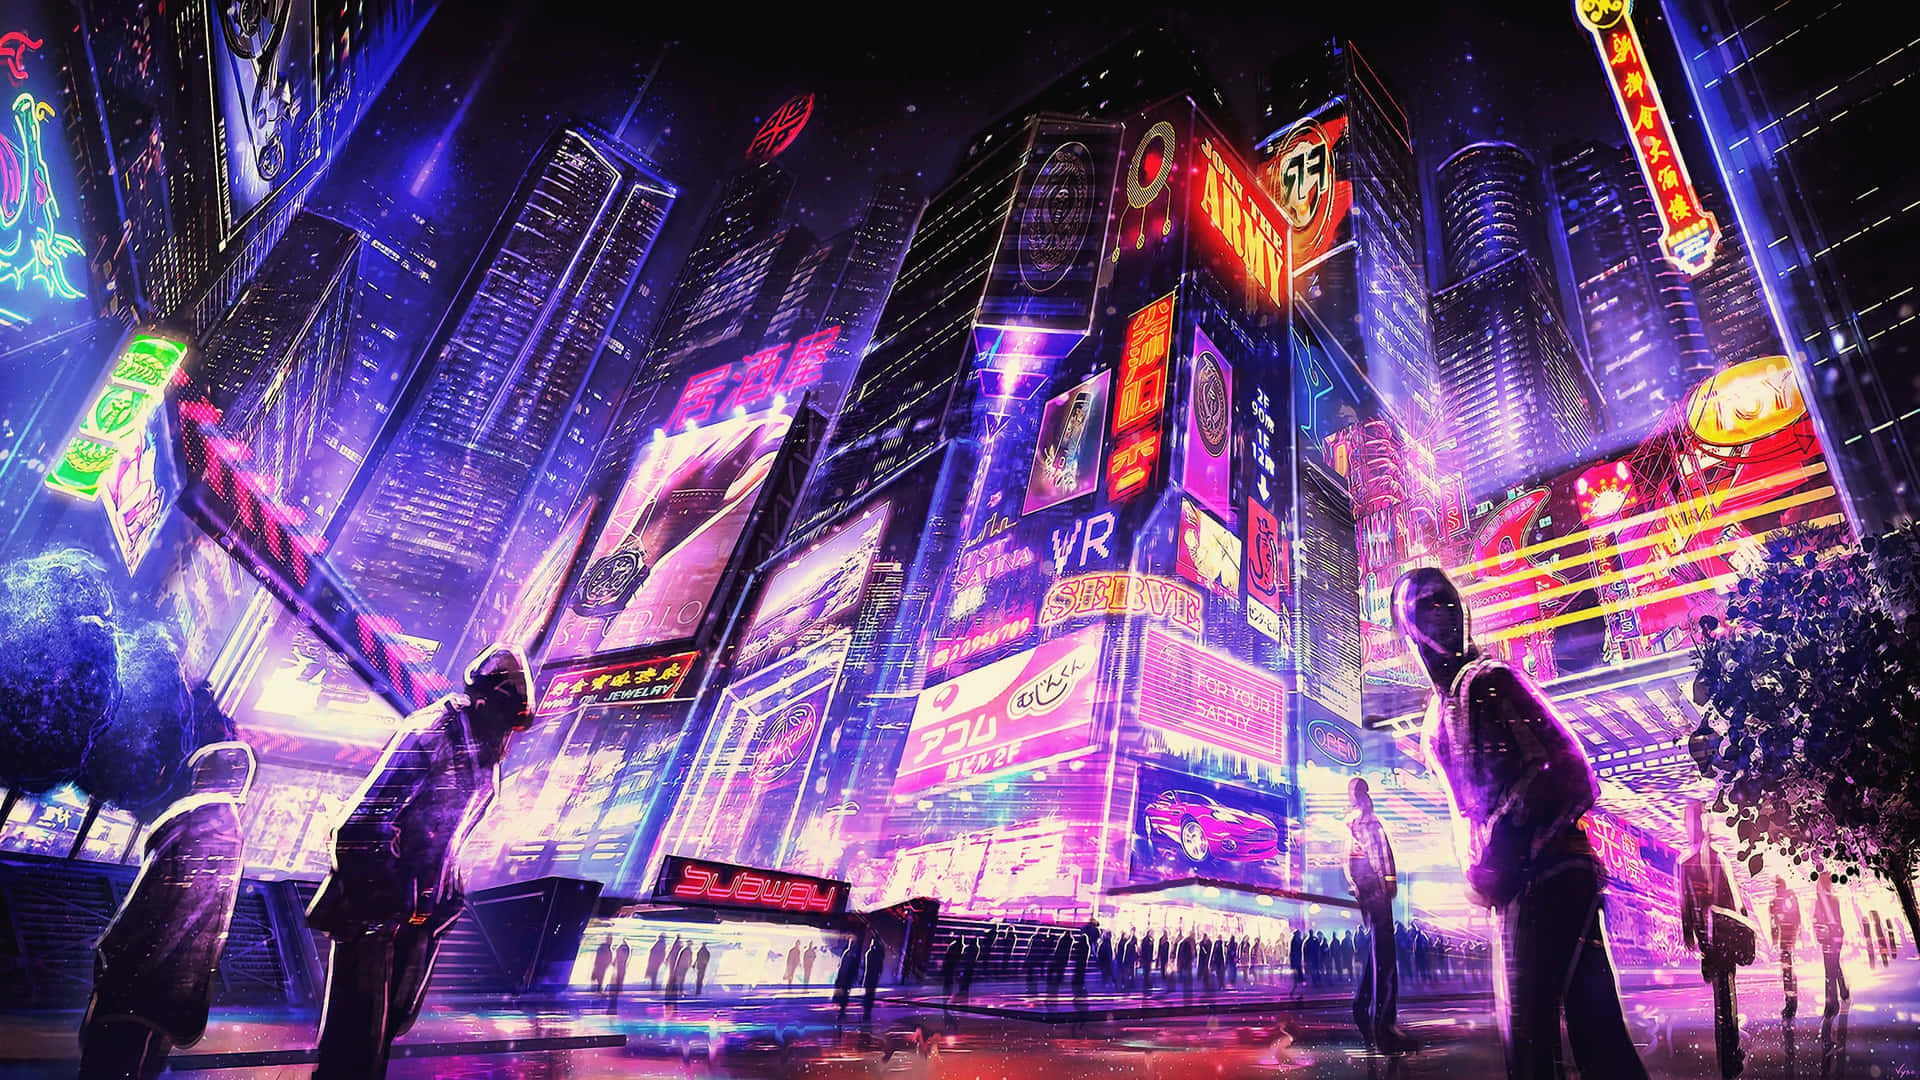 Explore the world of Cyberpunk City